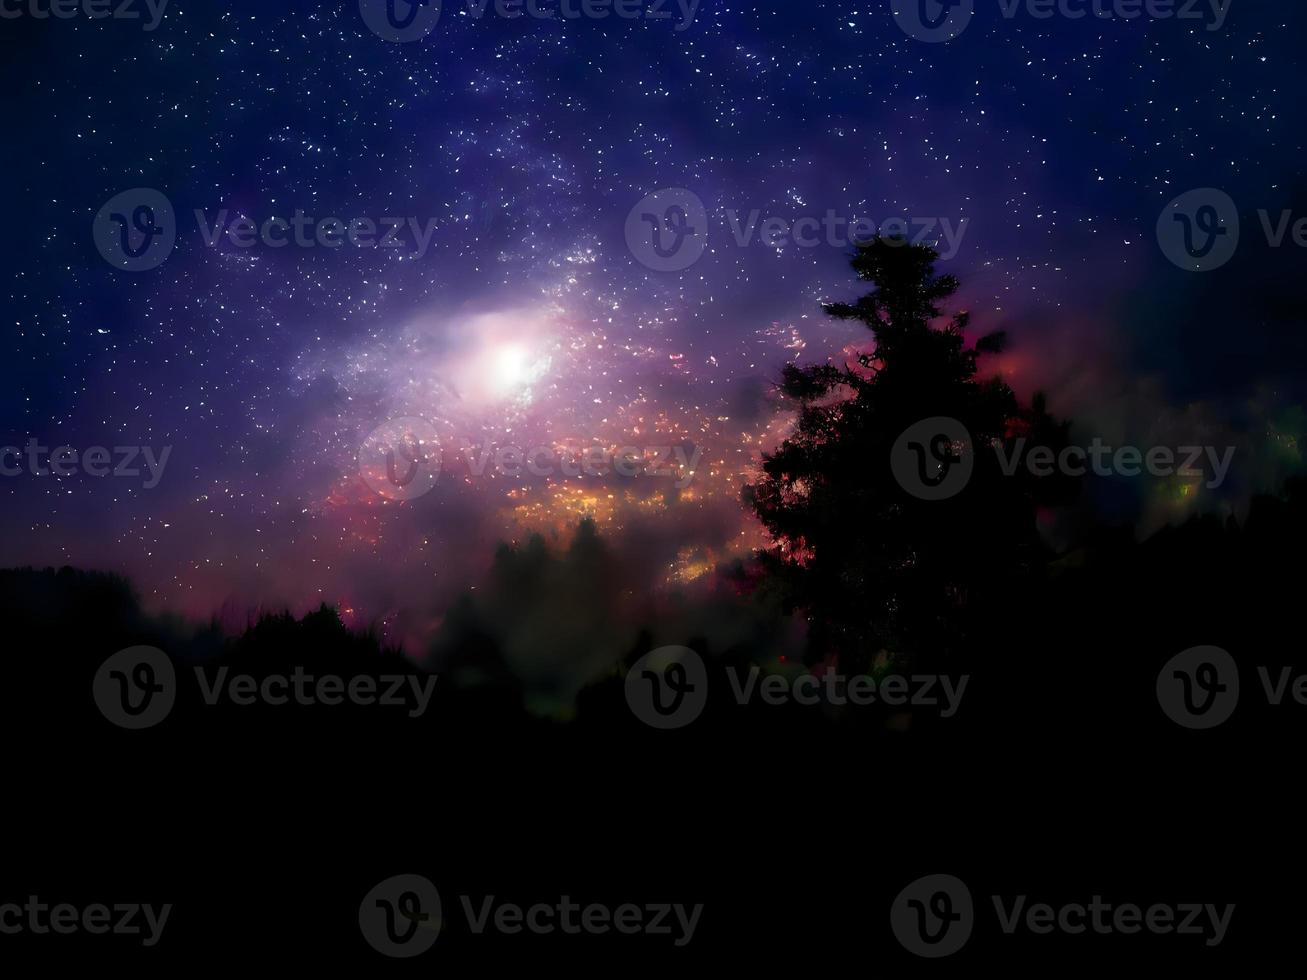 paesaggio notturno montagna e sfondo della galassia della Via Lattea, lunga esposizione, scarsa illuminazione foto